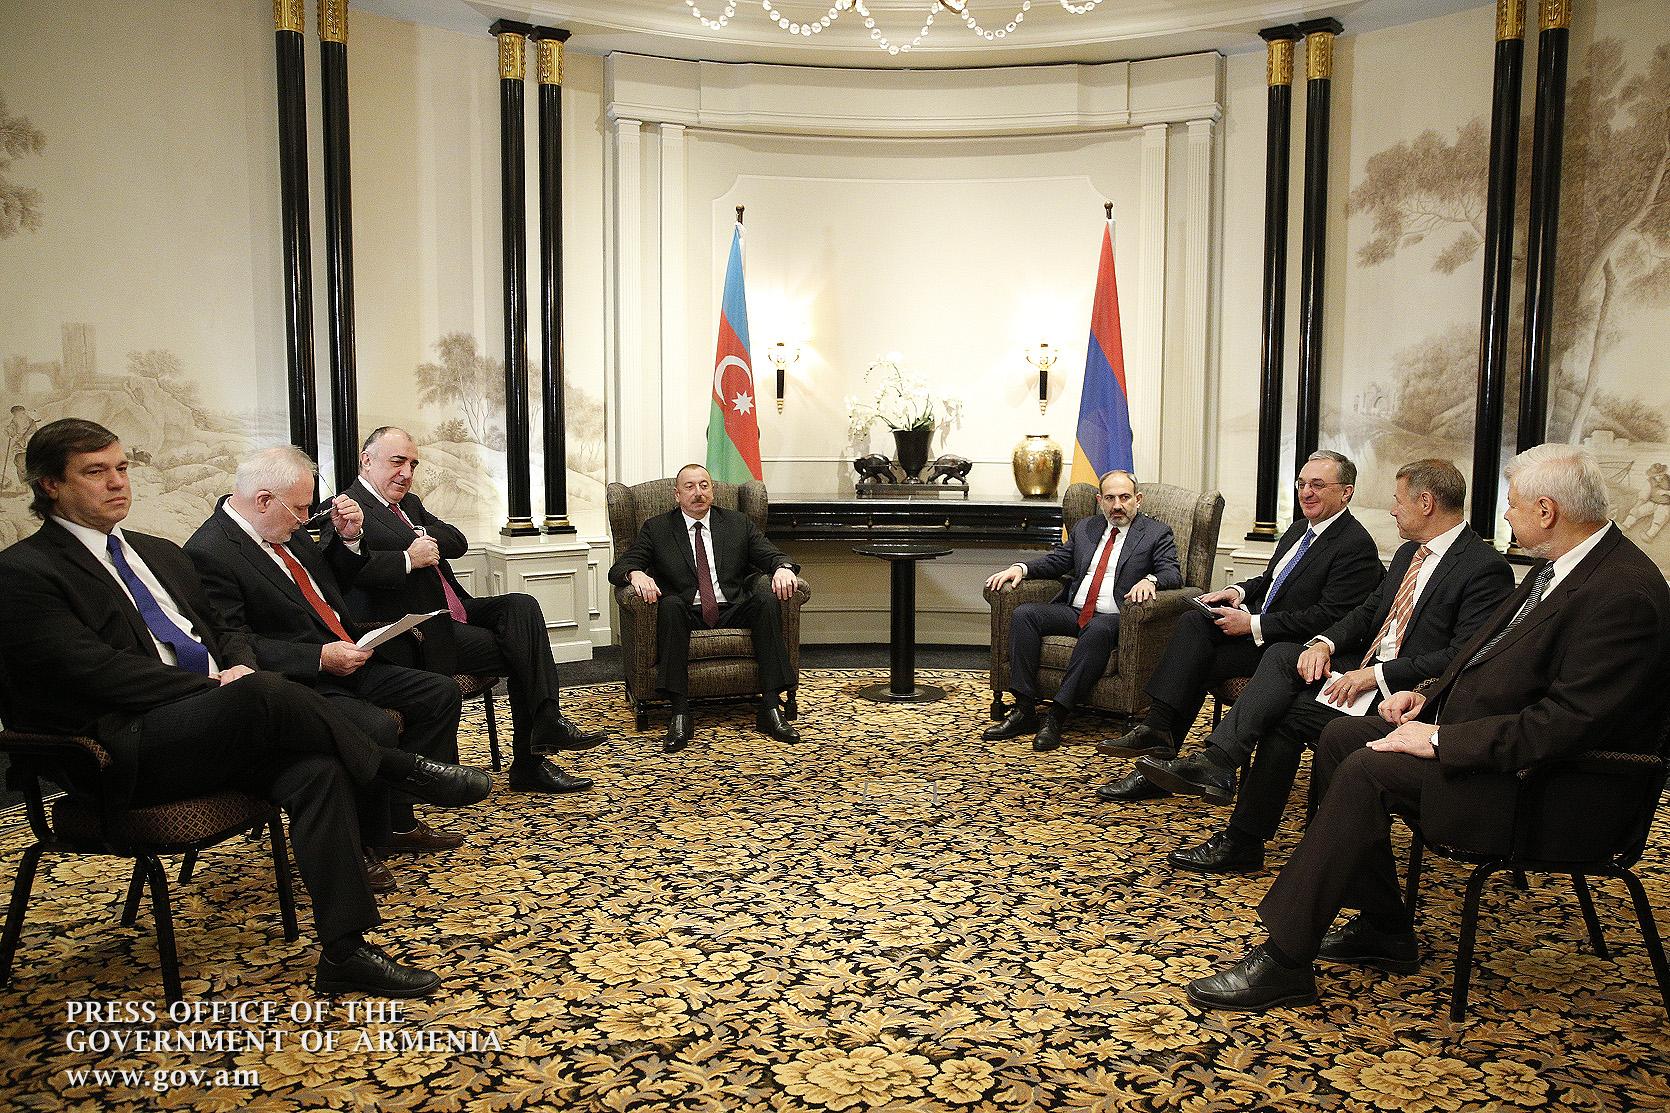 Nagorno Karabakh: No Breakthrough, But a Serious Talk About Peace